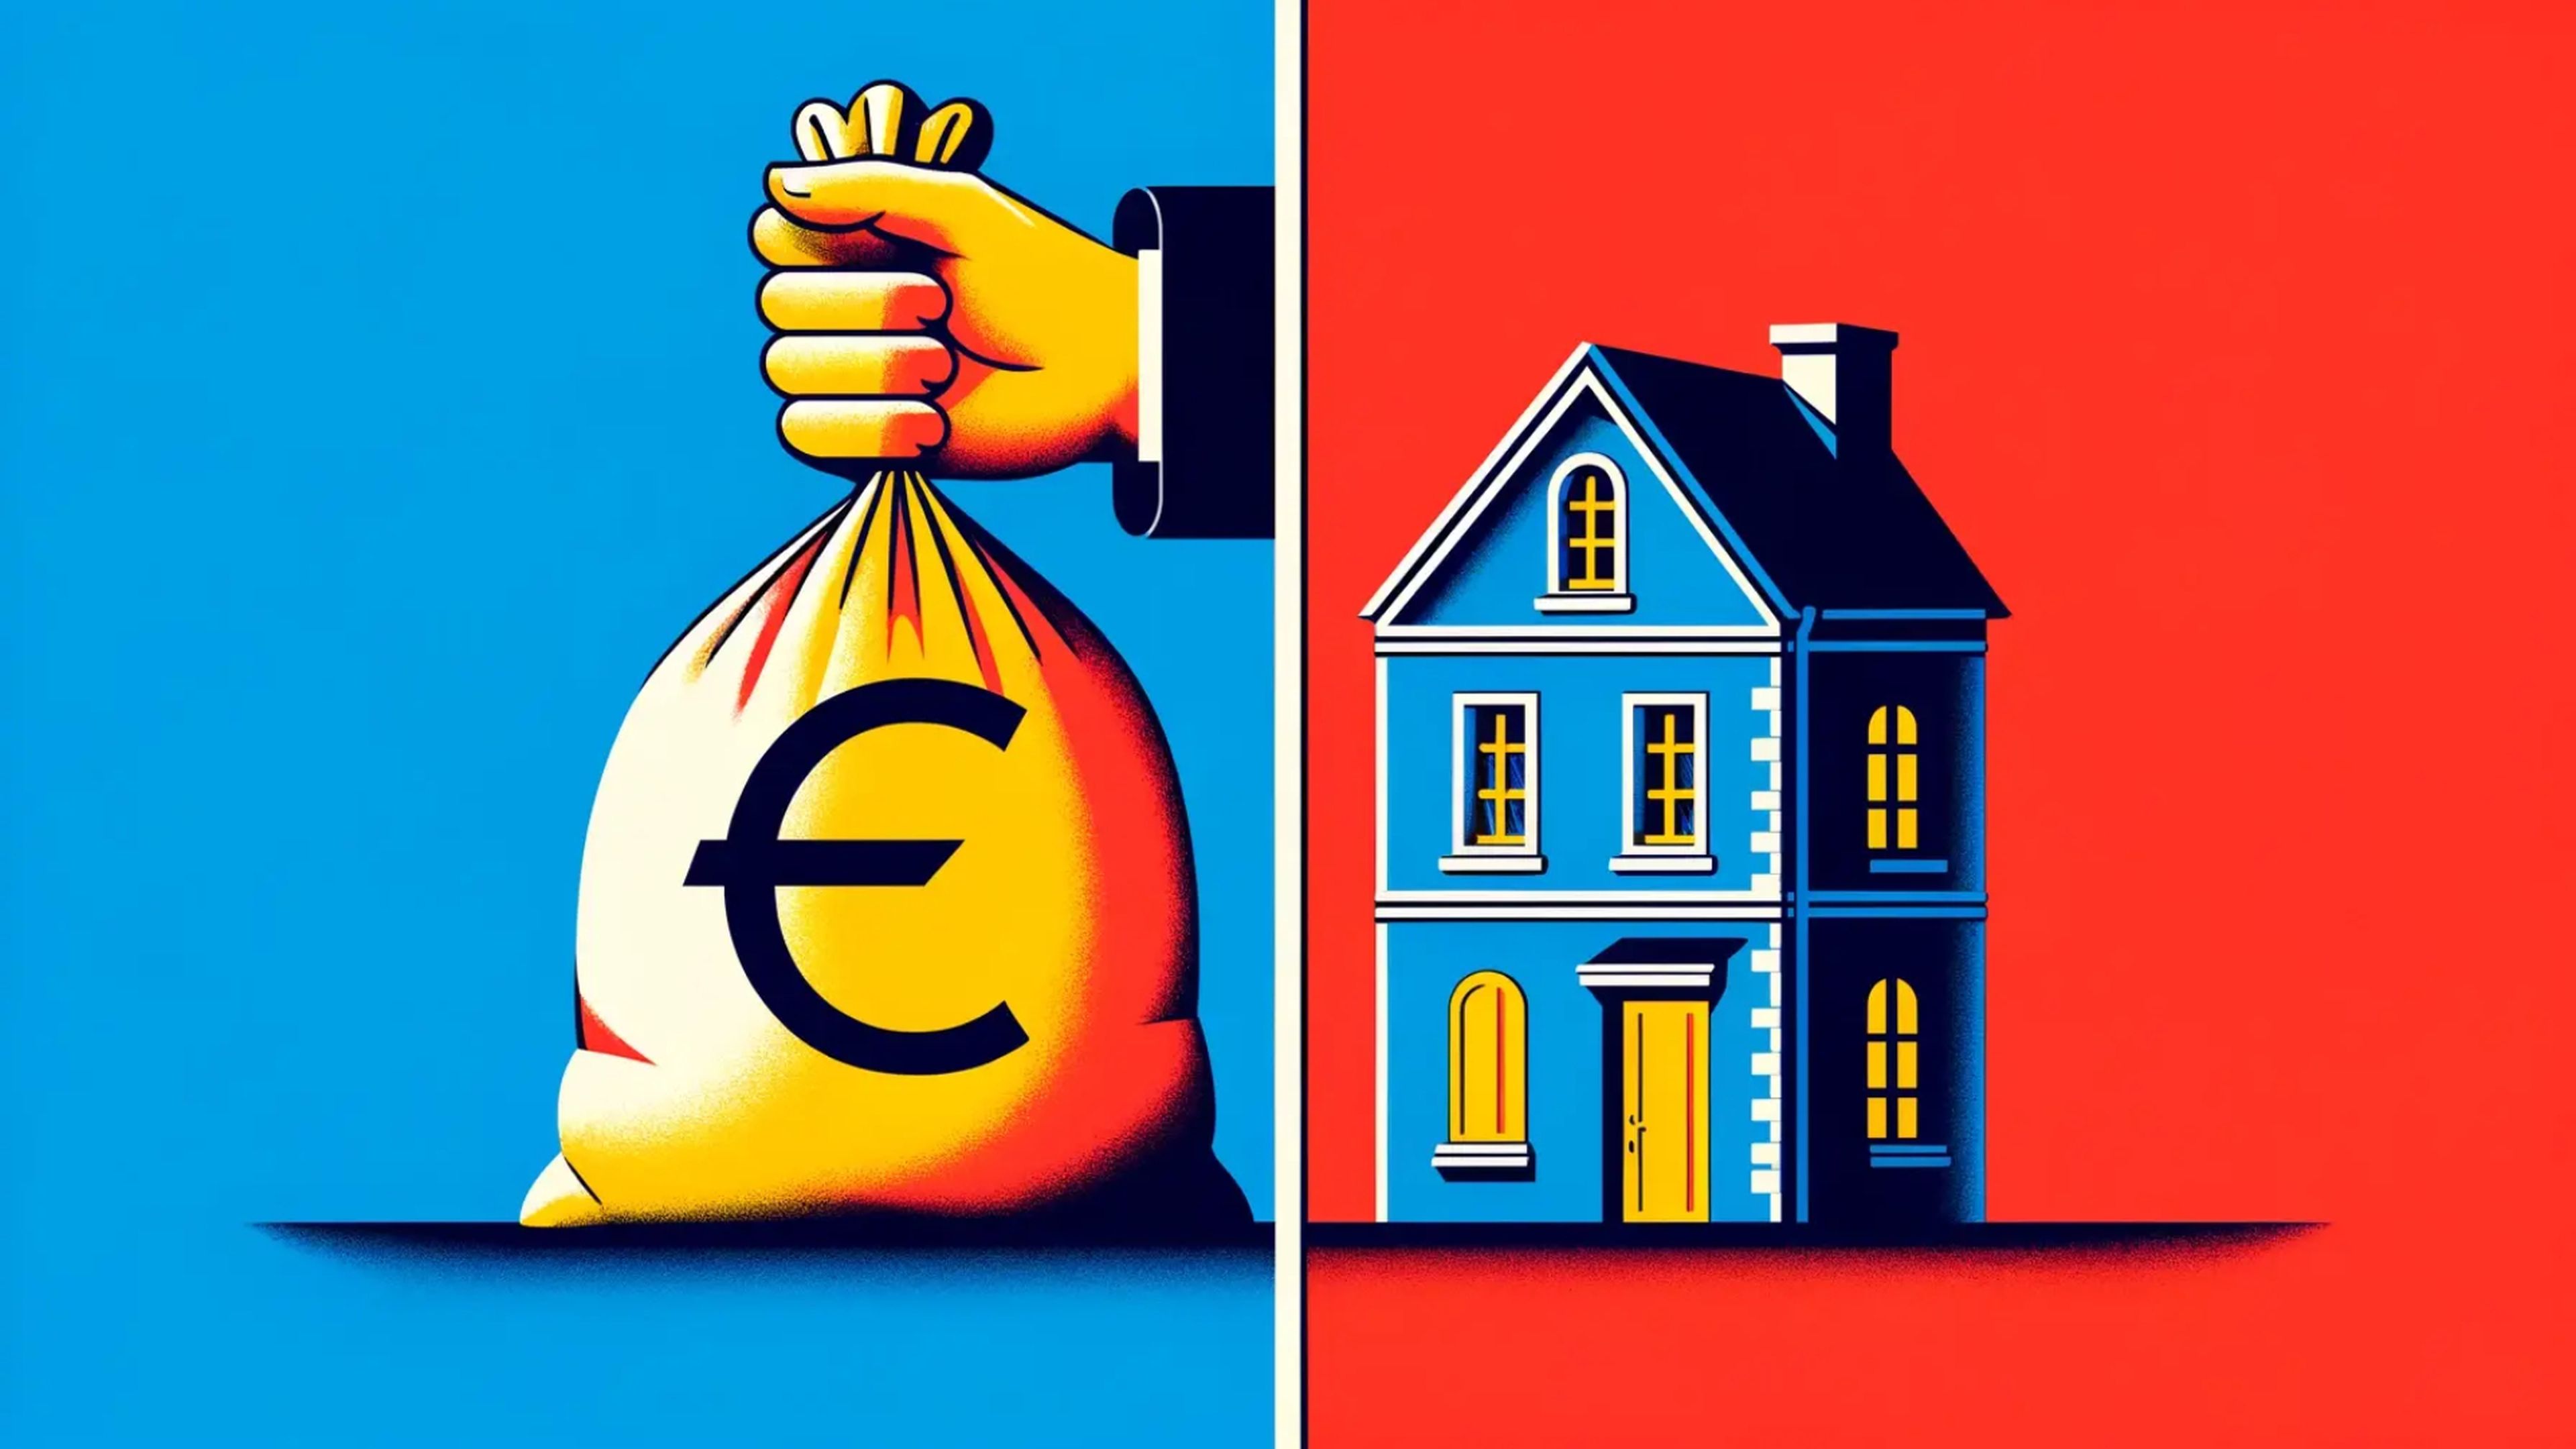 Ilustración sobre la rentabilidad de invertir en vivienda para alquilar